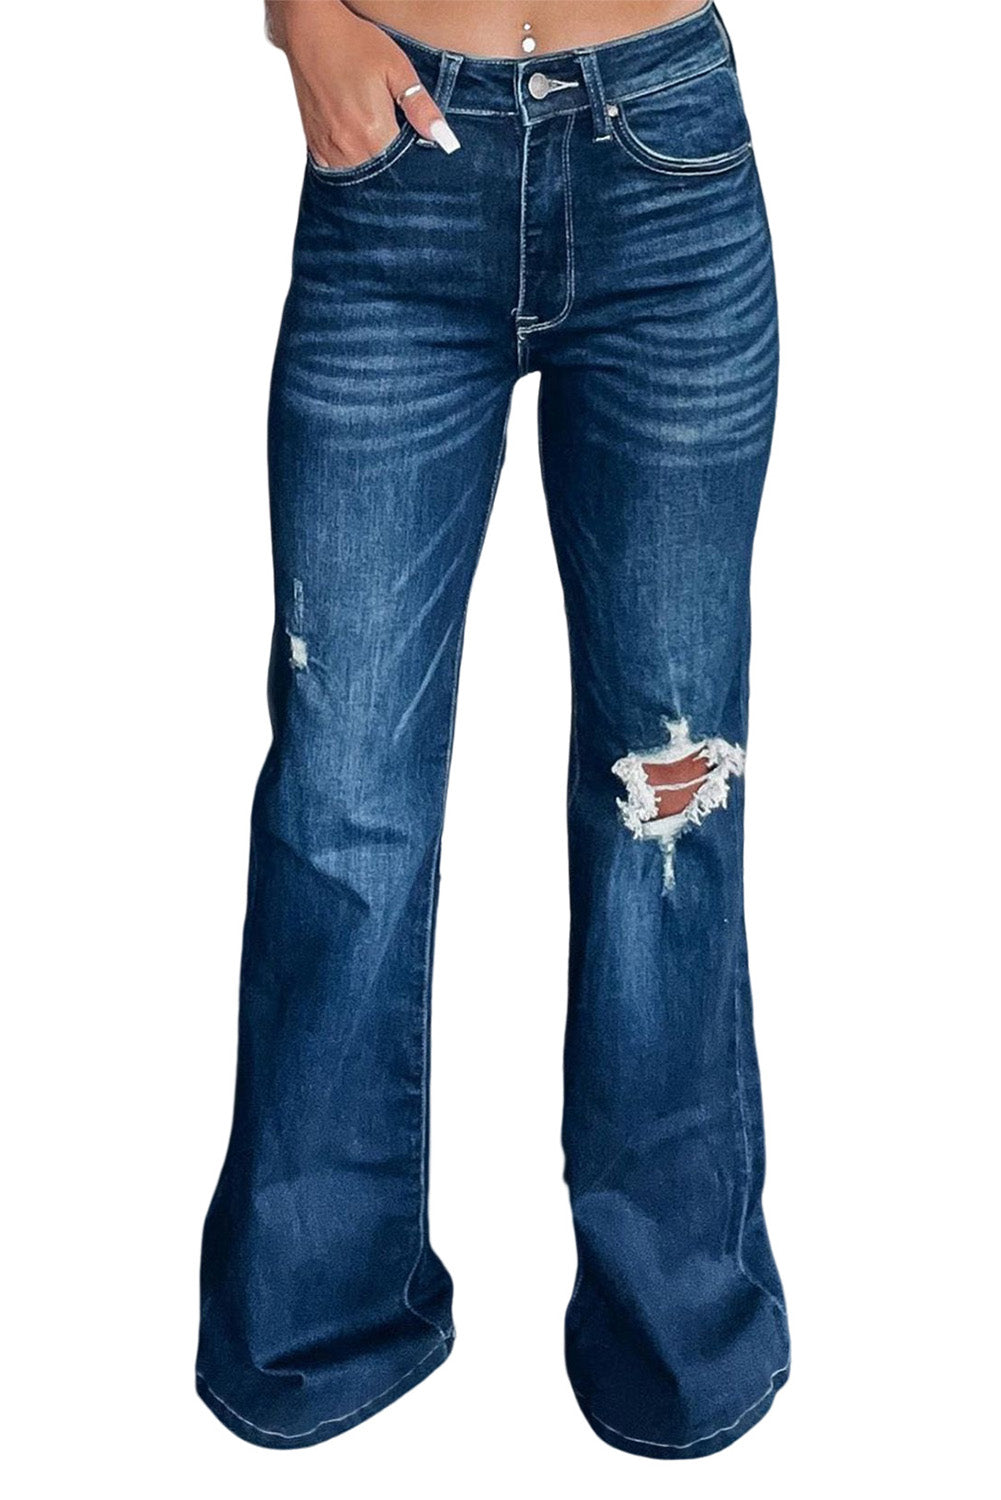 Asymmetrical Open Knee Distressed Flare Jeans-bottoms-Trendsi-JipsiJunk